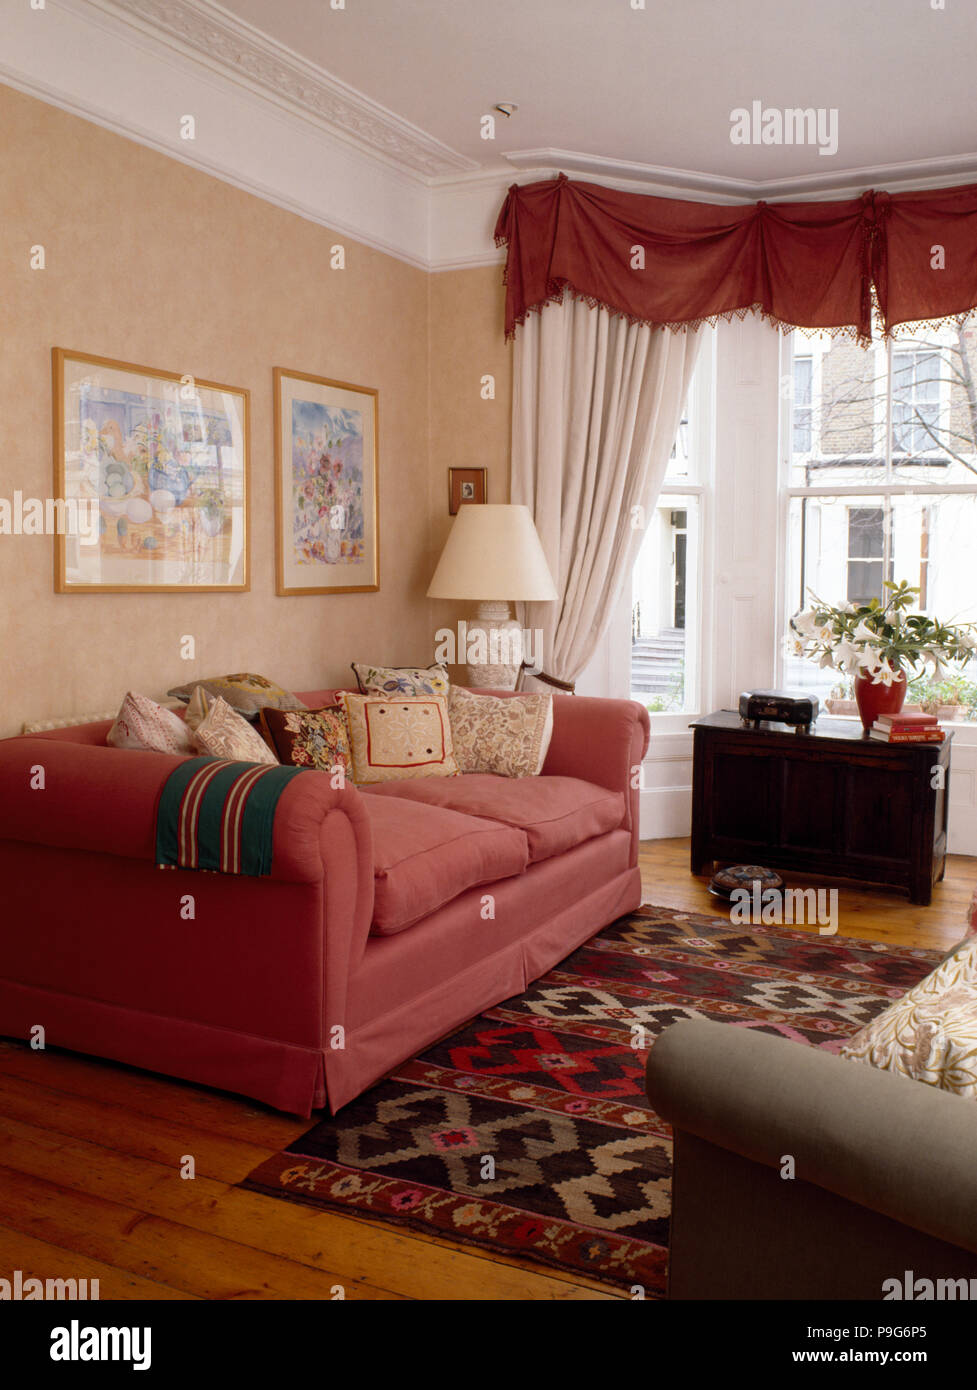 Divano rosa degli anni novanta in soggiorno con una rosa mantovane e tendaggi bianchi sulla finestra Foto Stock